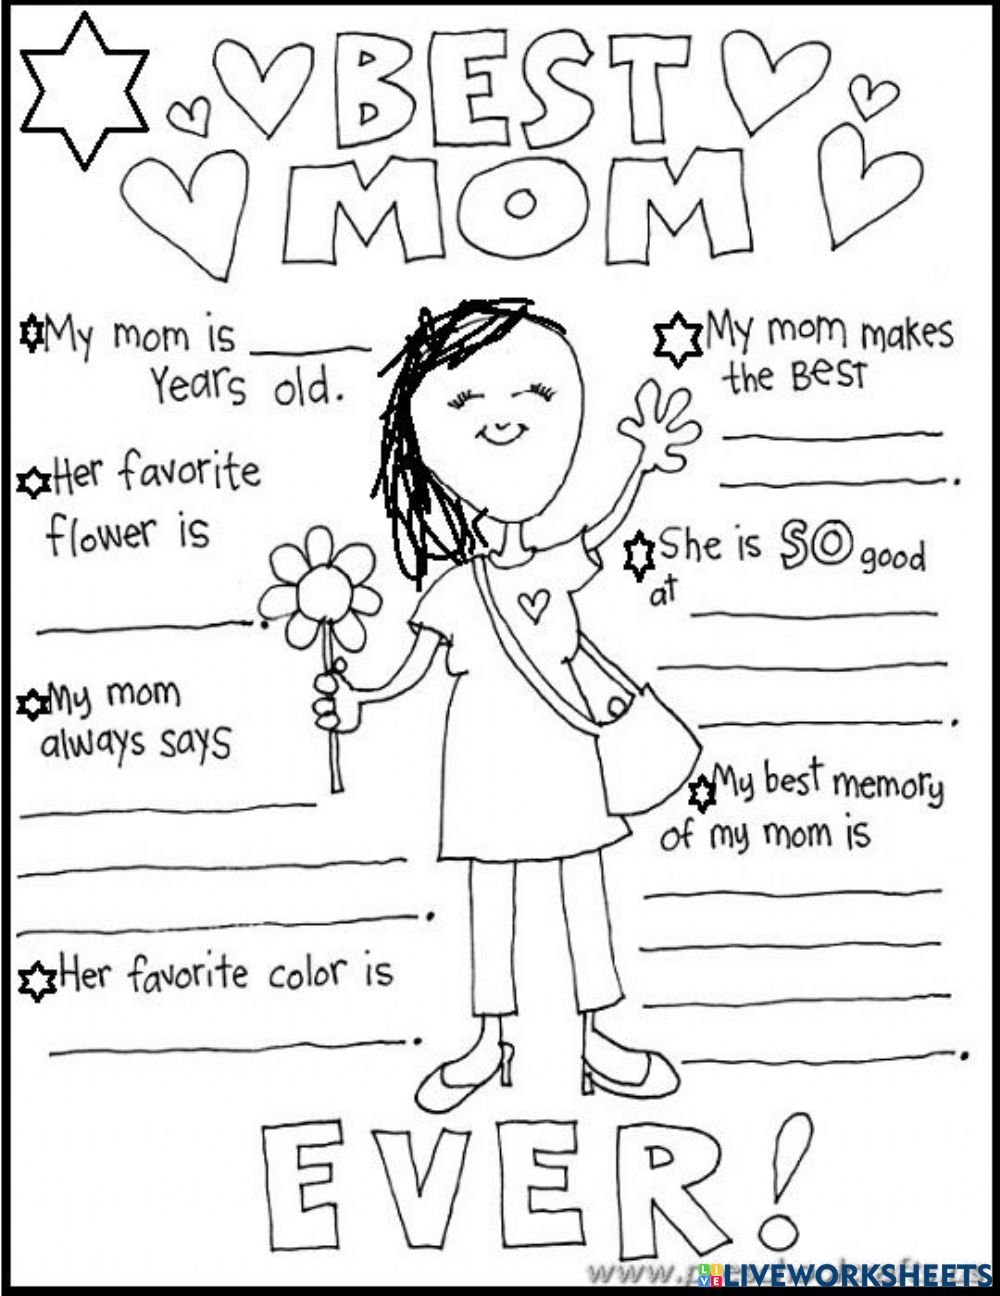 8 march worksheets for kids. Задания ко Дню матери на английском. Worksheets ко Дню матери. Мамин день задания на английский язык.